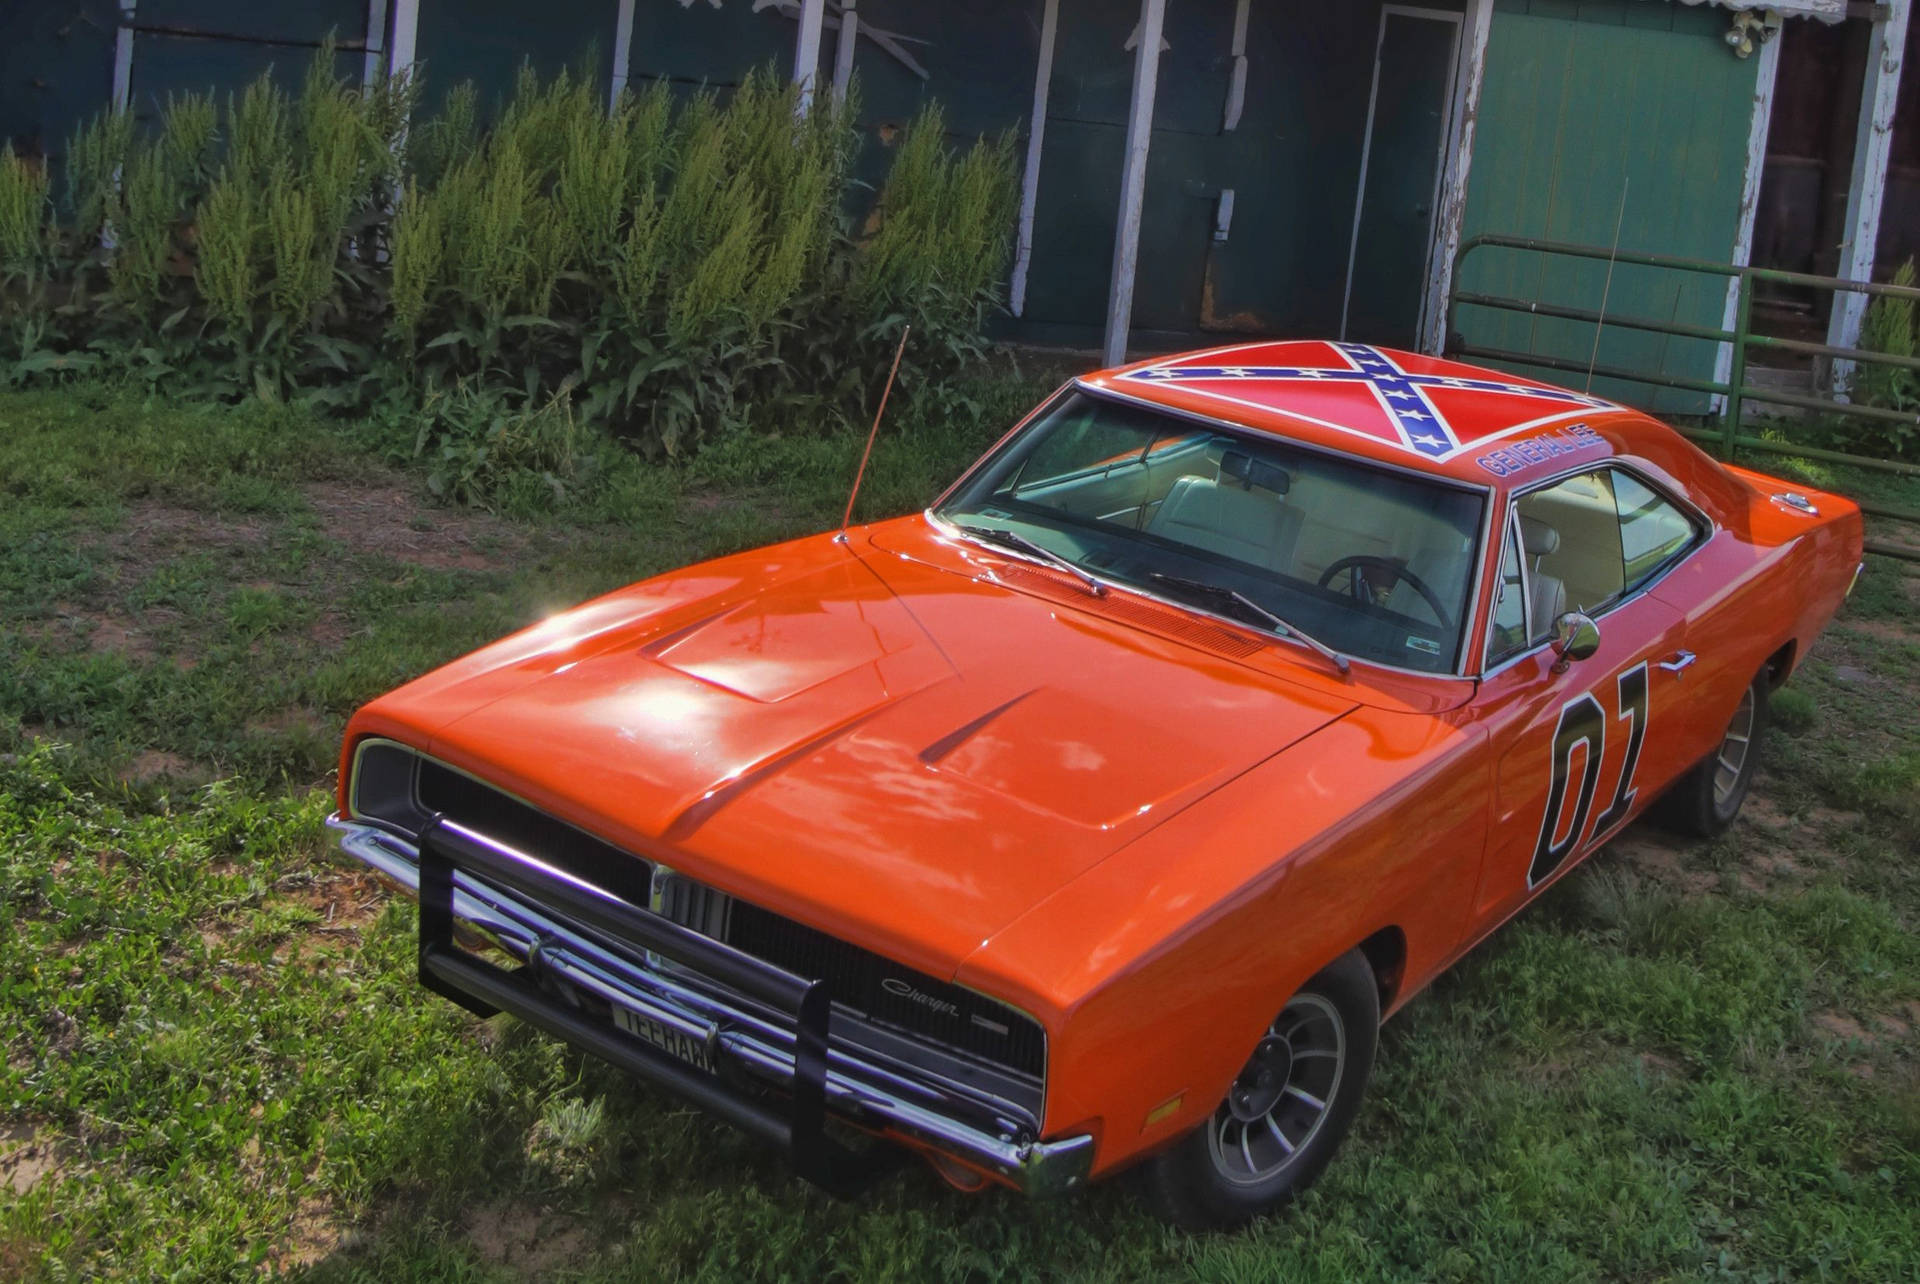 En orange Dodge Charger parkeret i græsset Wallpaper